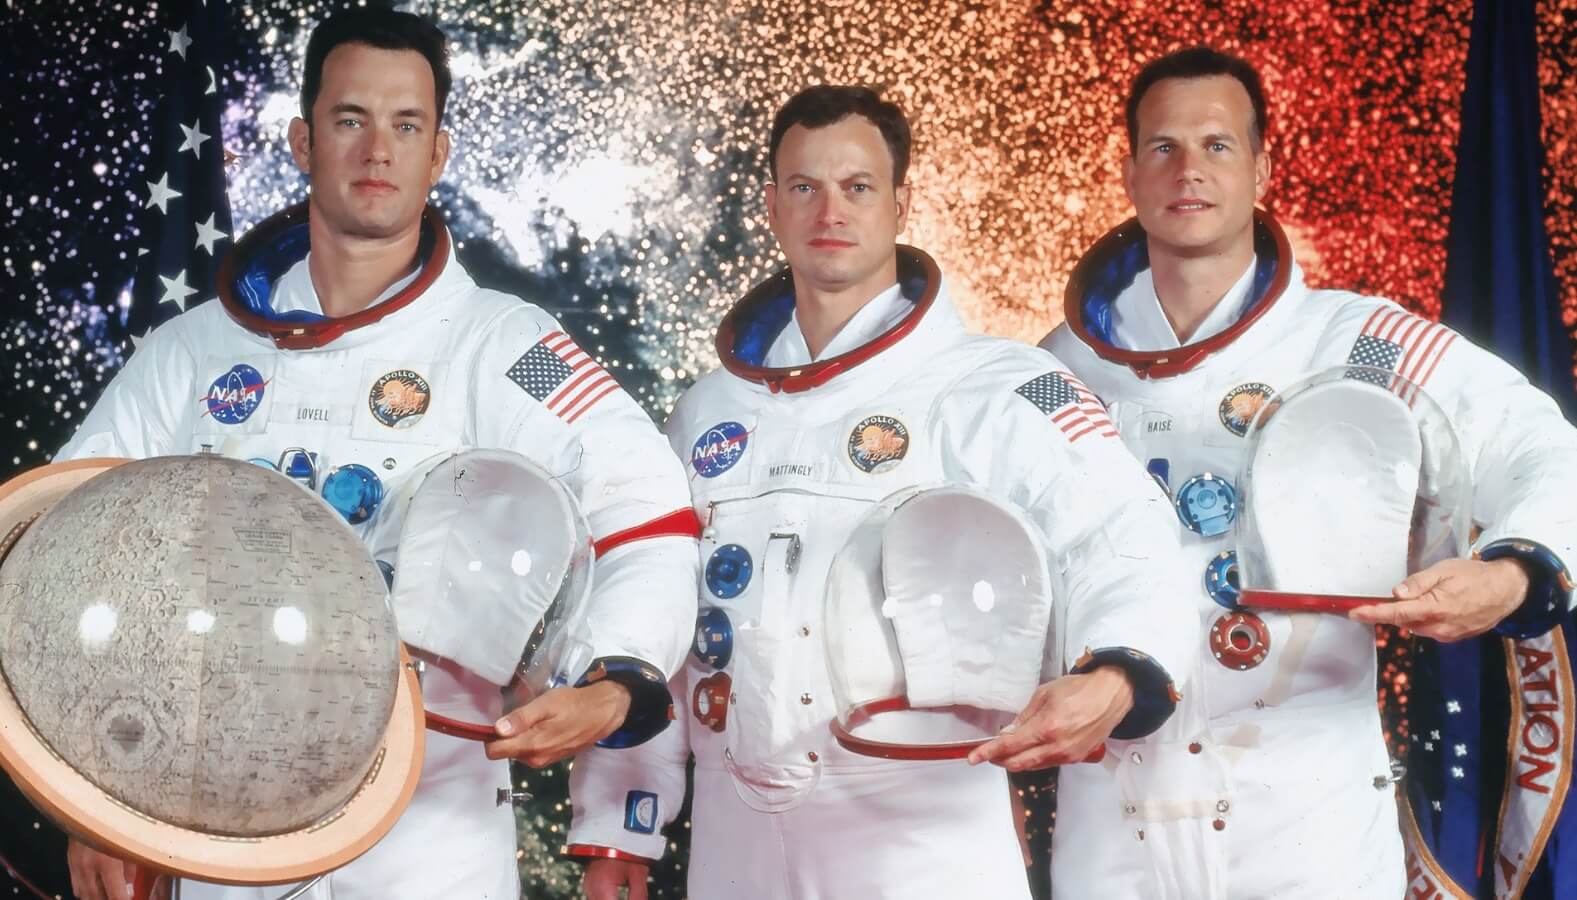 Самый далекий полет людей в космос. Про миссию «Аполлон-13» был снят отличный одноименный фильм с Томом Хэнксом. Источник: space.com. Фото.